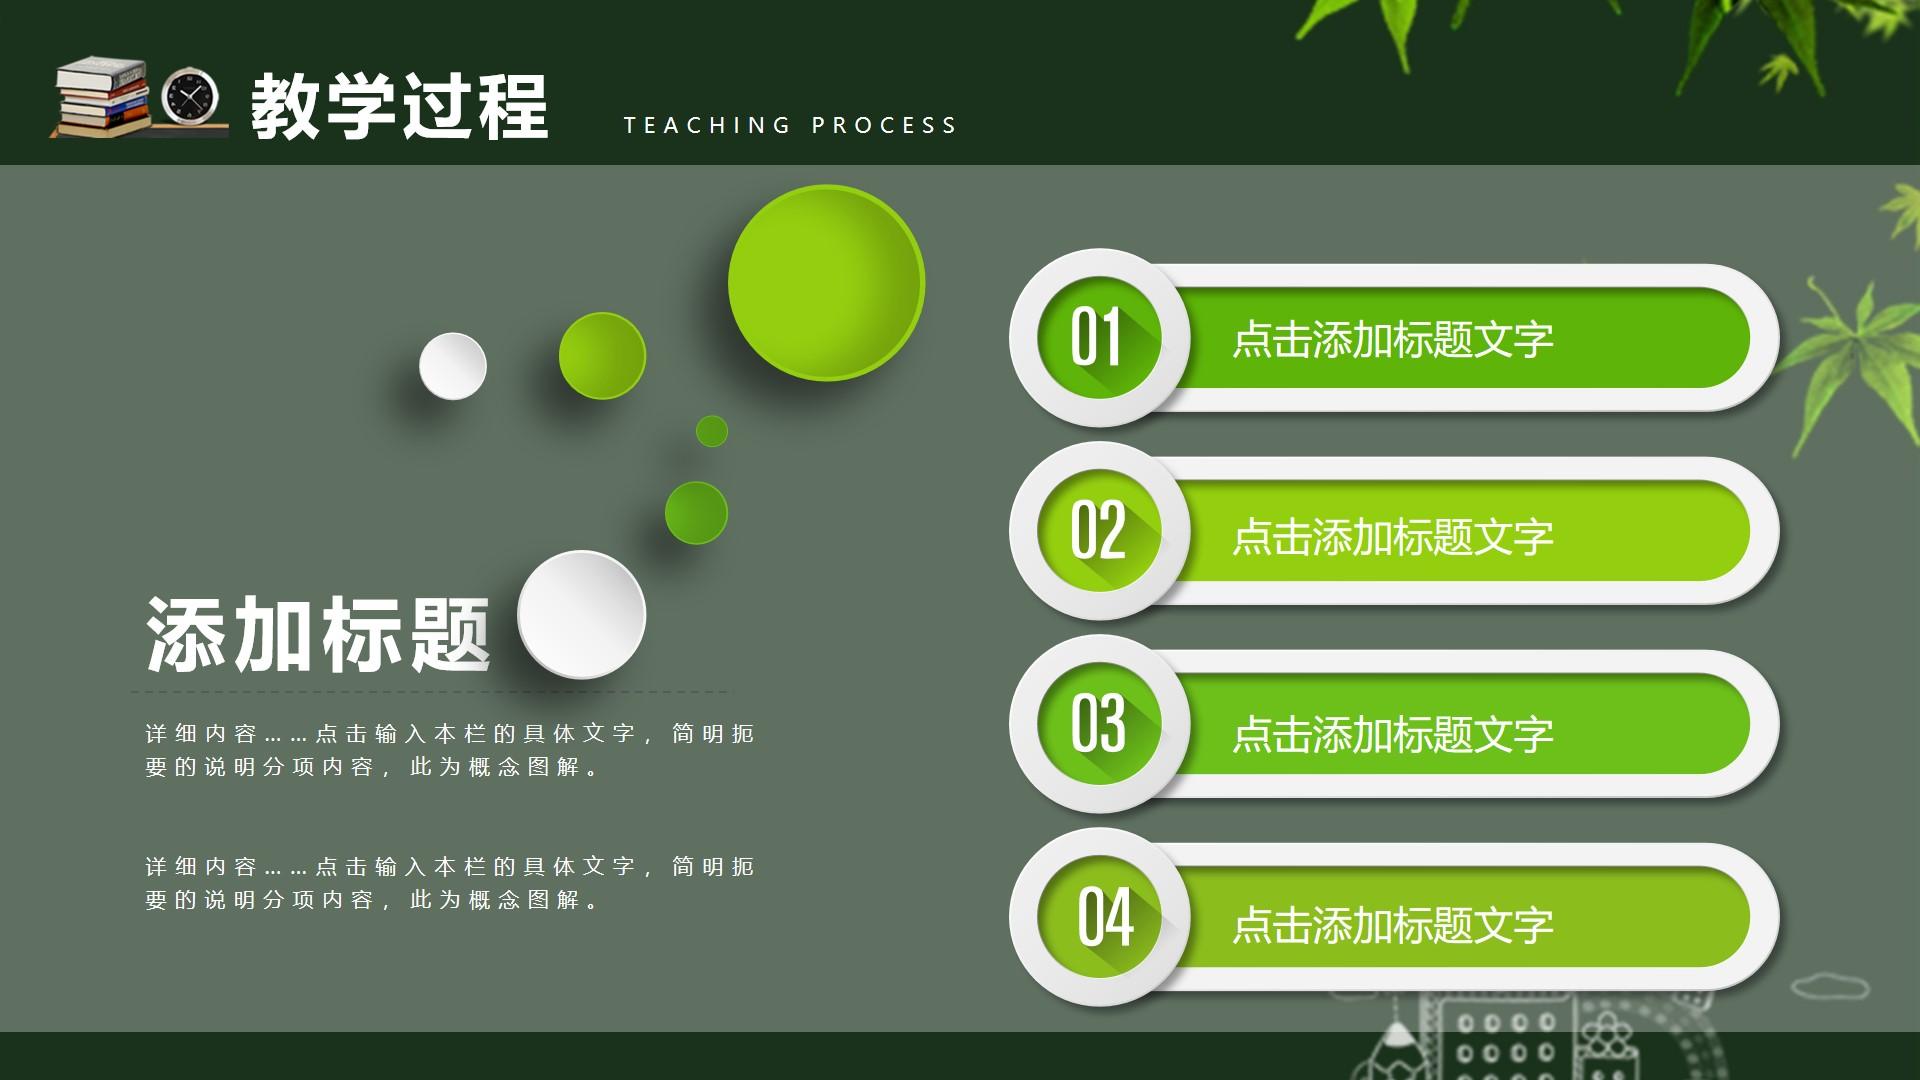 教育教学绿色白色实景卡通概念 teaching process 图解云素材PPT模板1672664144873